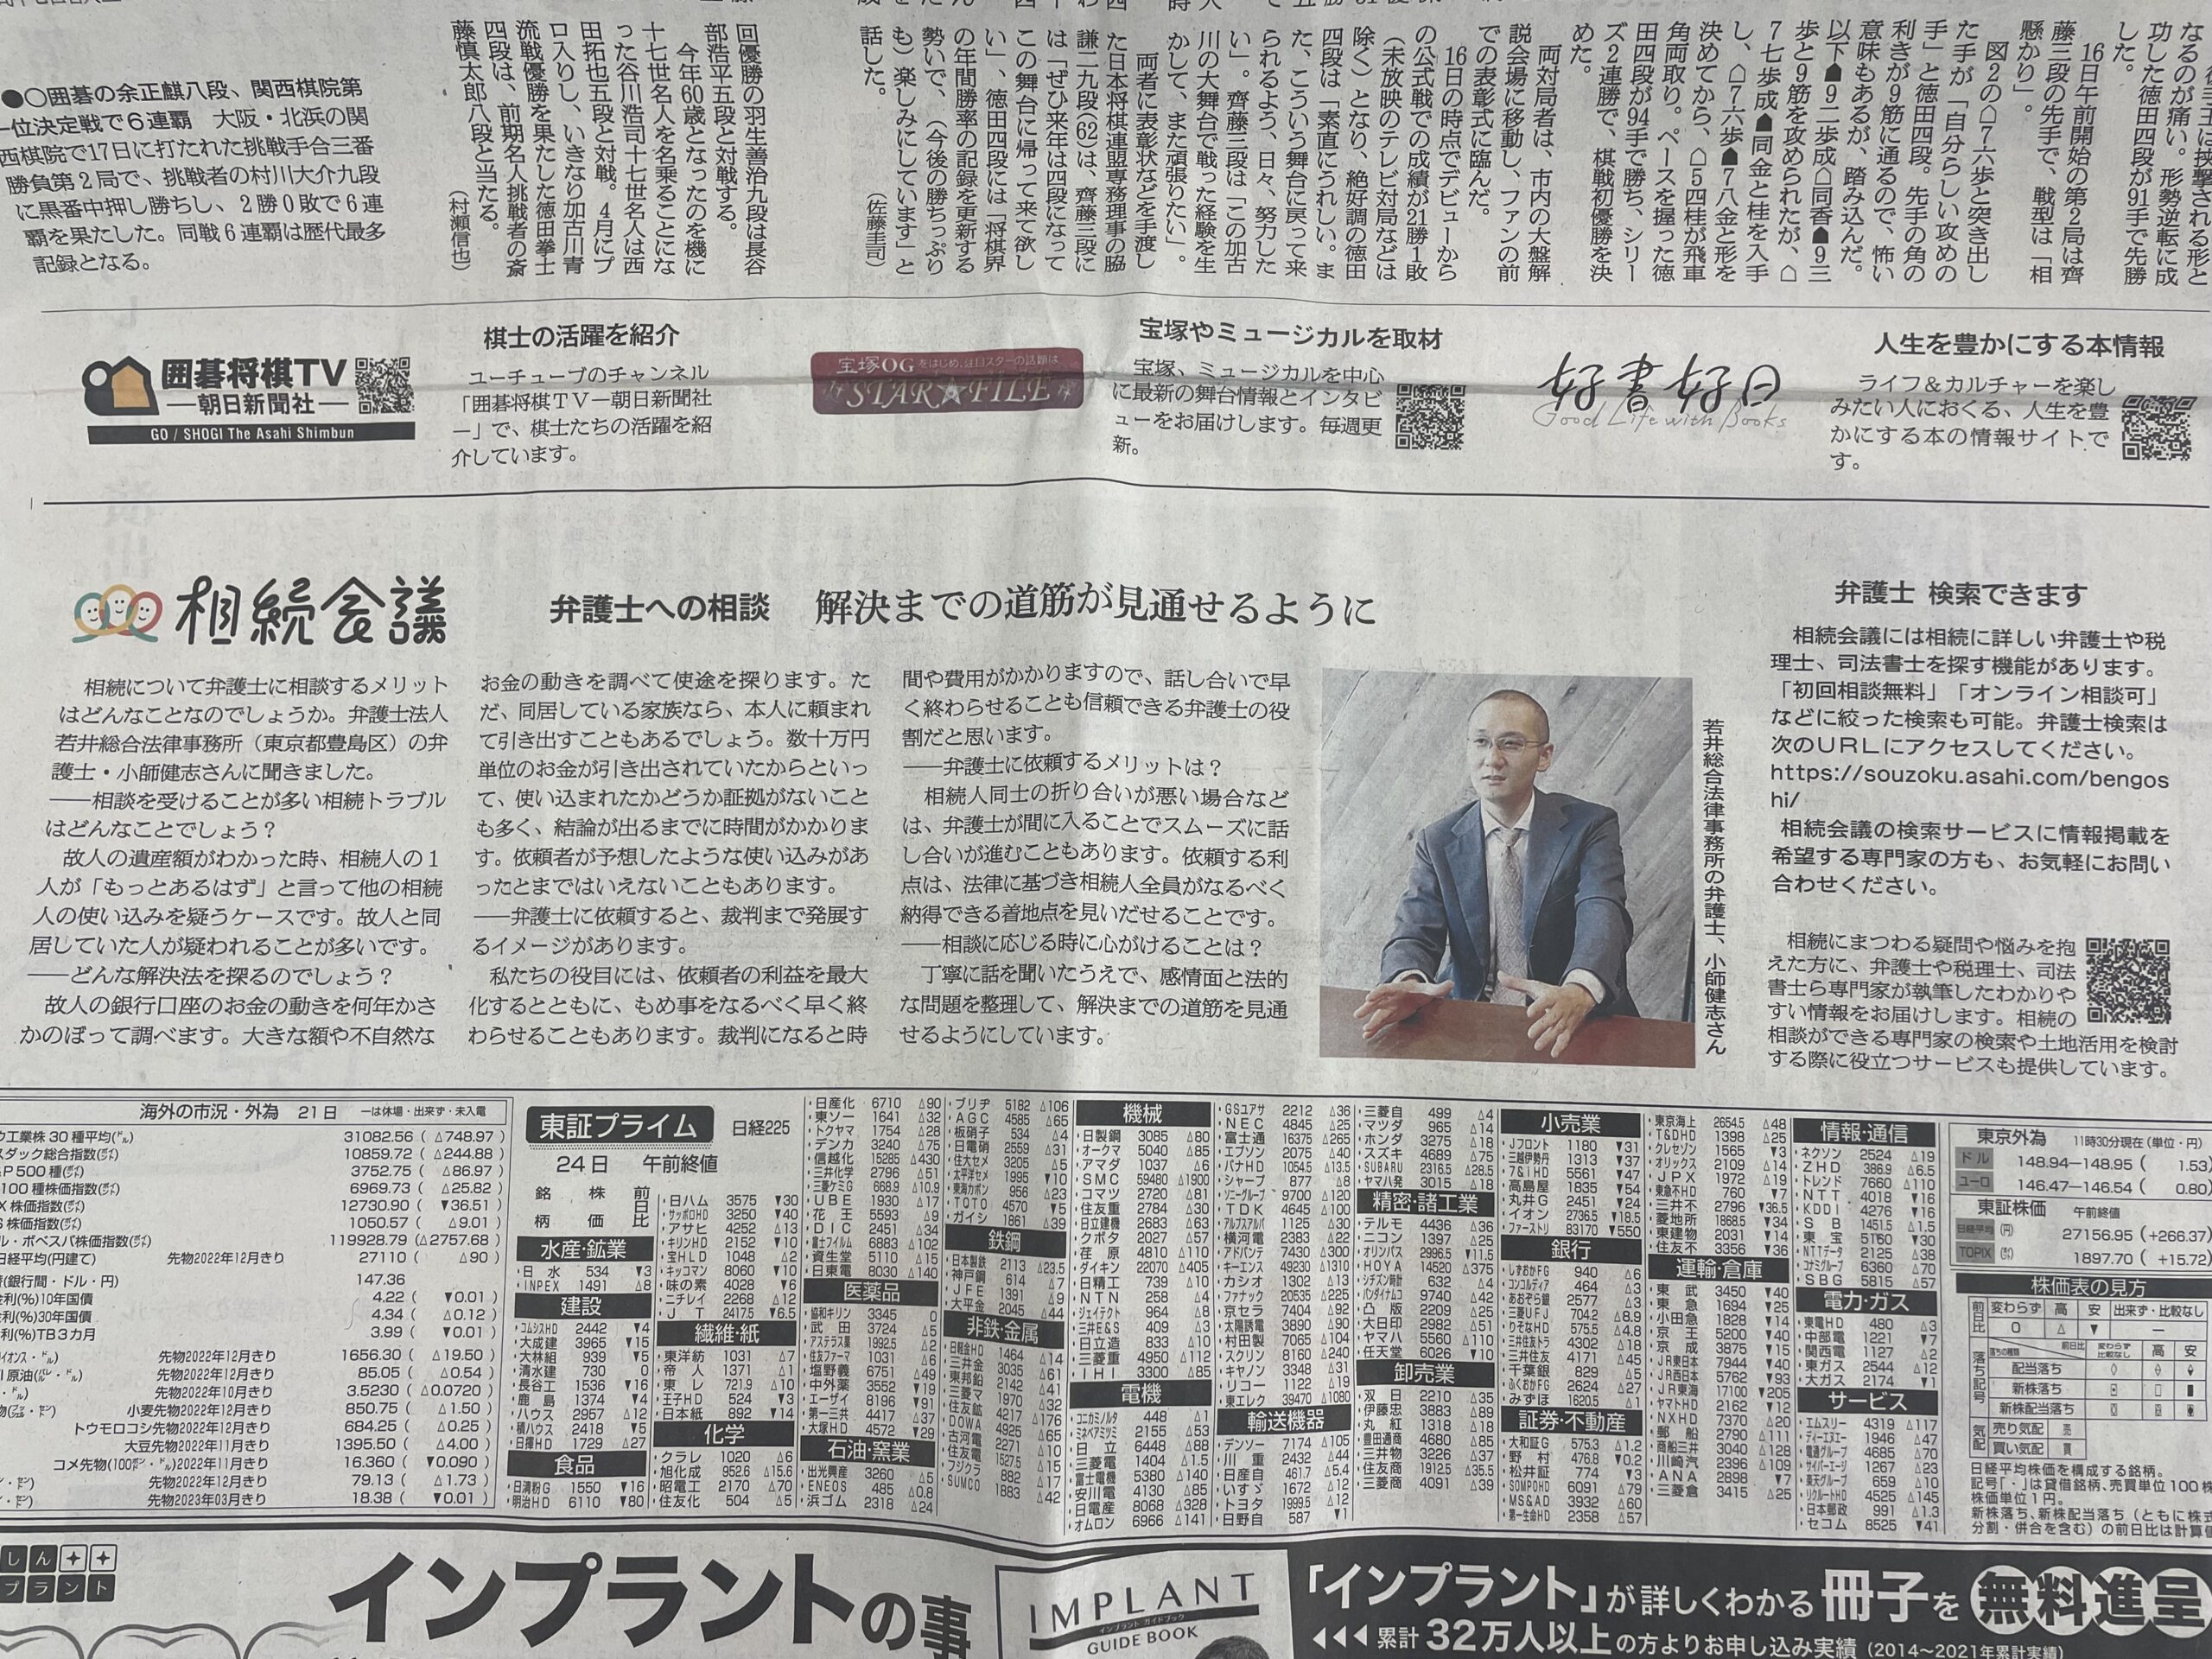 【掲載情報】朝日新聞に取材記事が掲載されました。